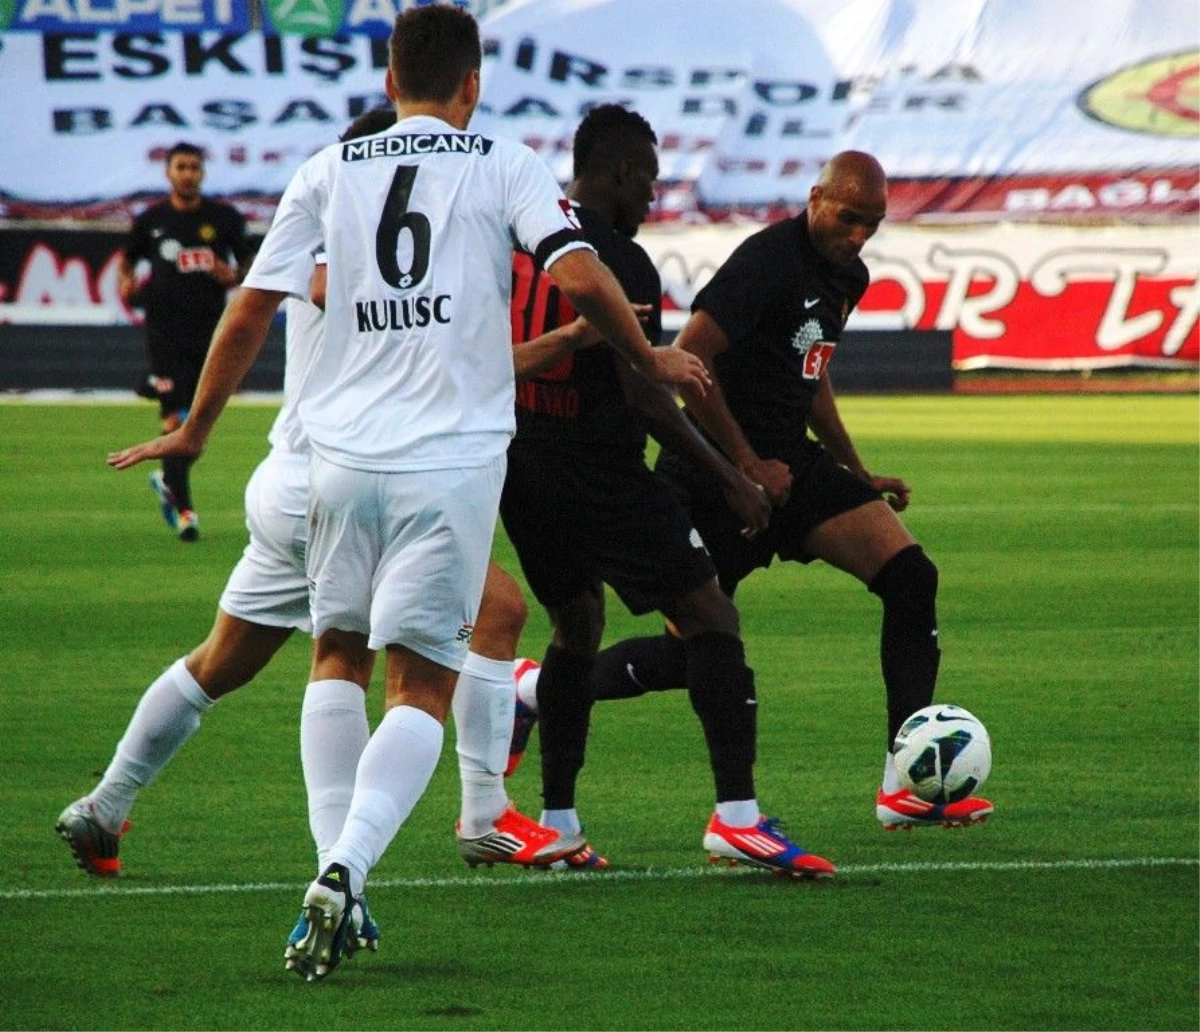 Eskişehirspor-Gençlerbirliği: 4-2